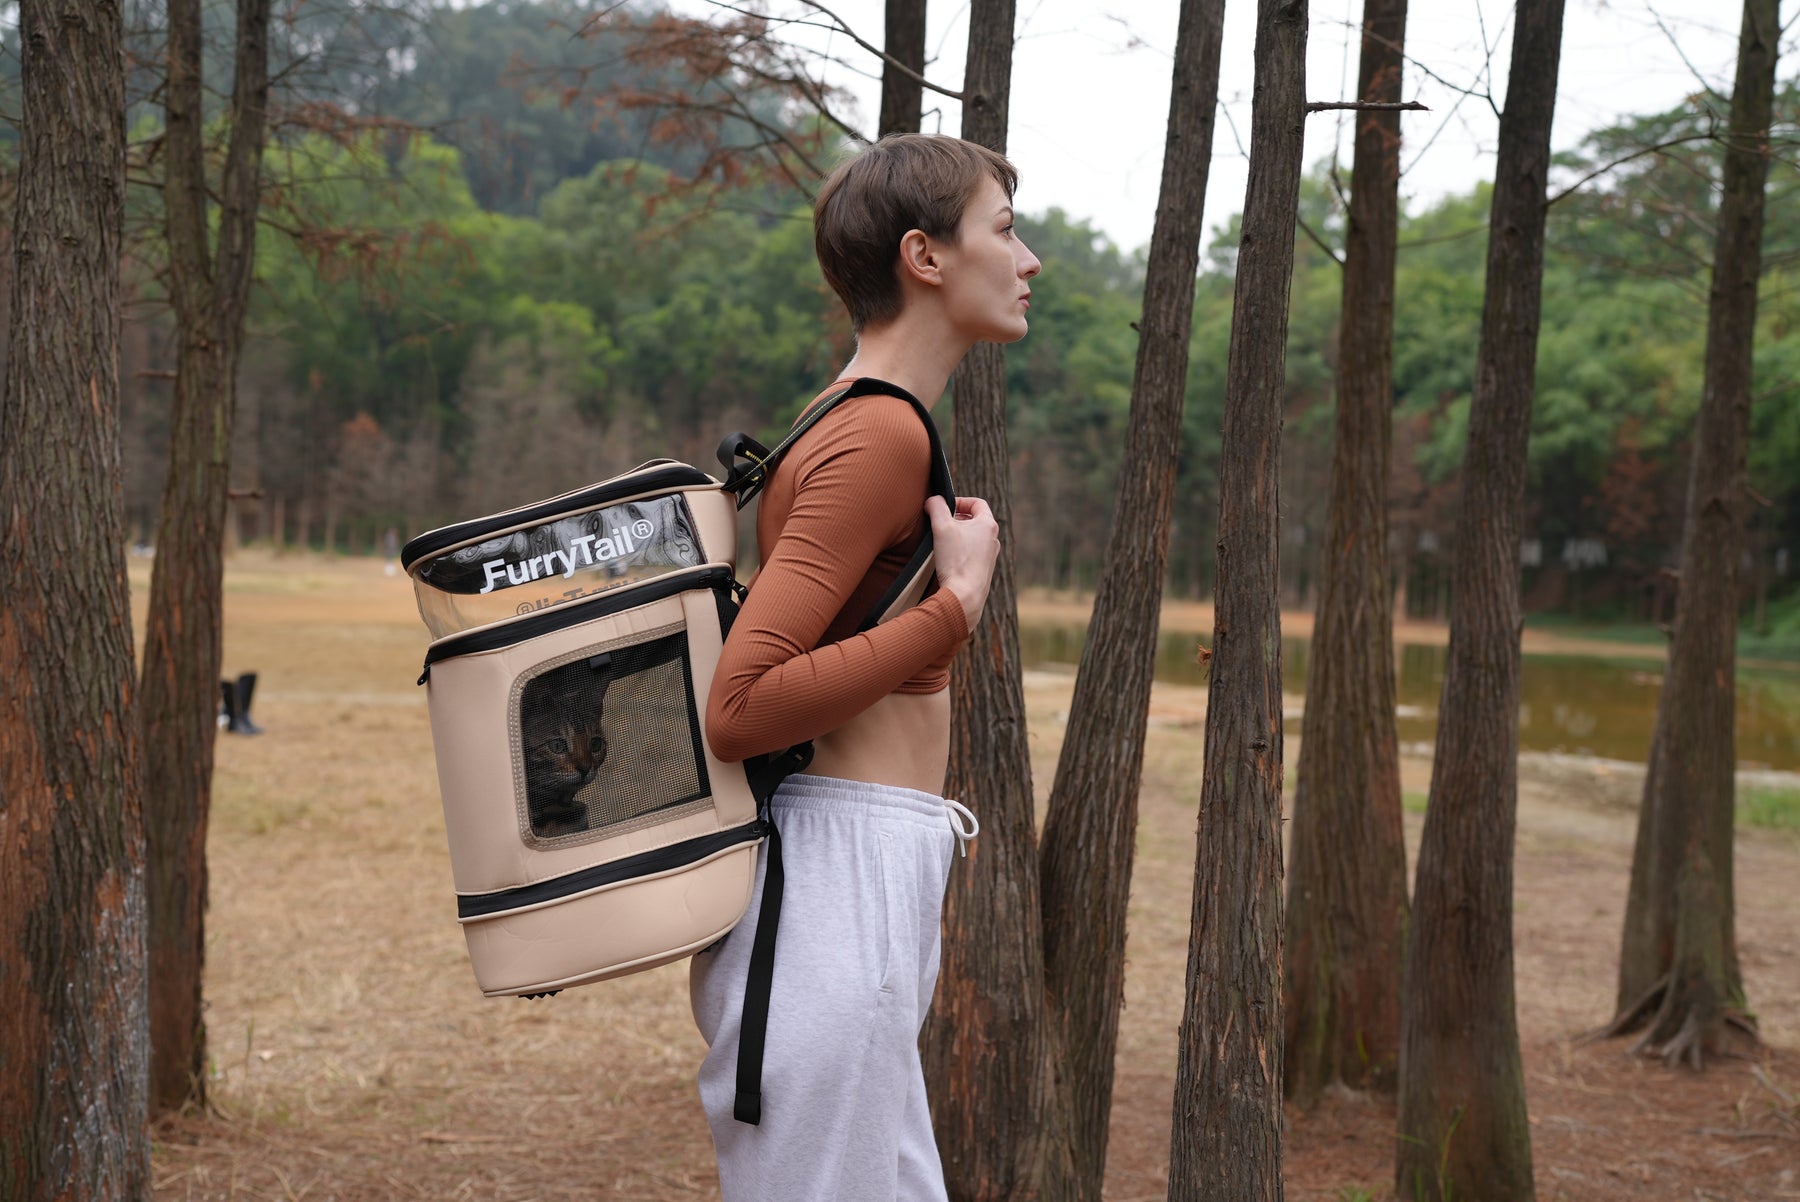 [Furrytail]- Pet Backpack